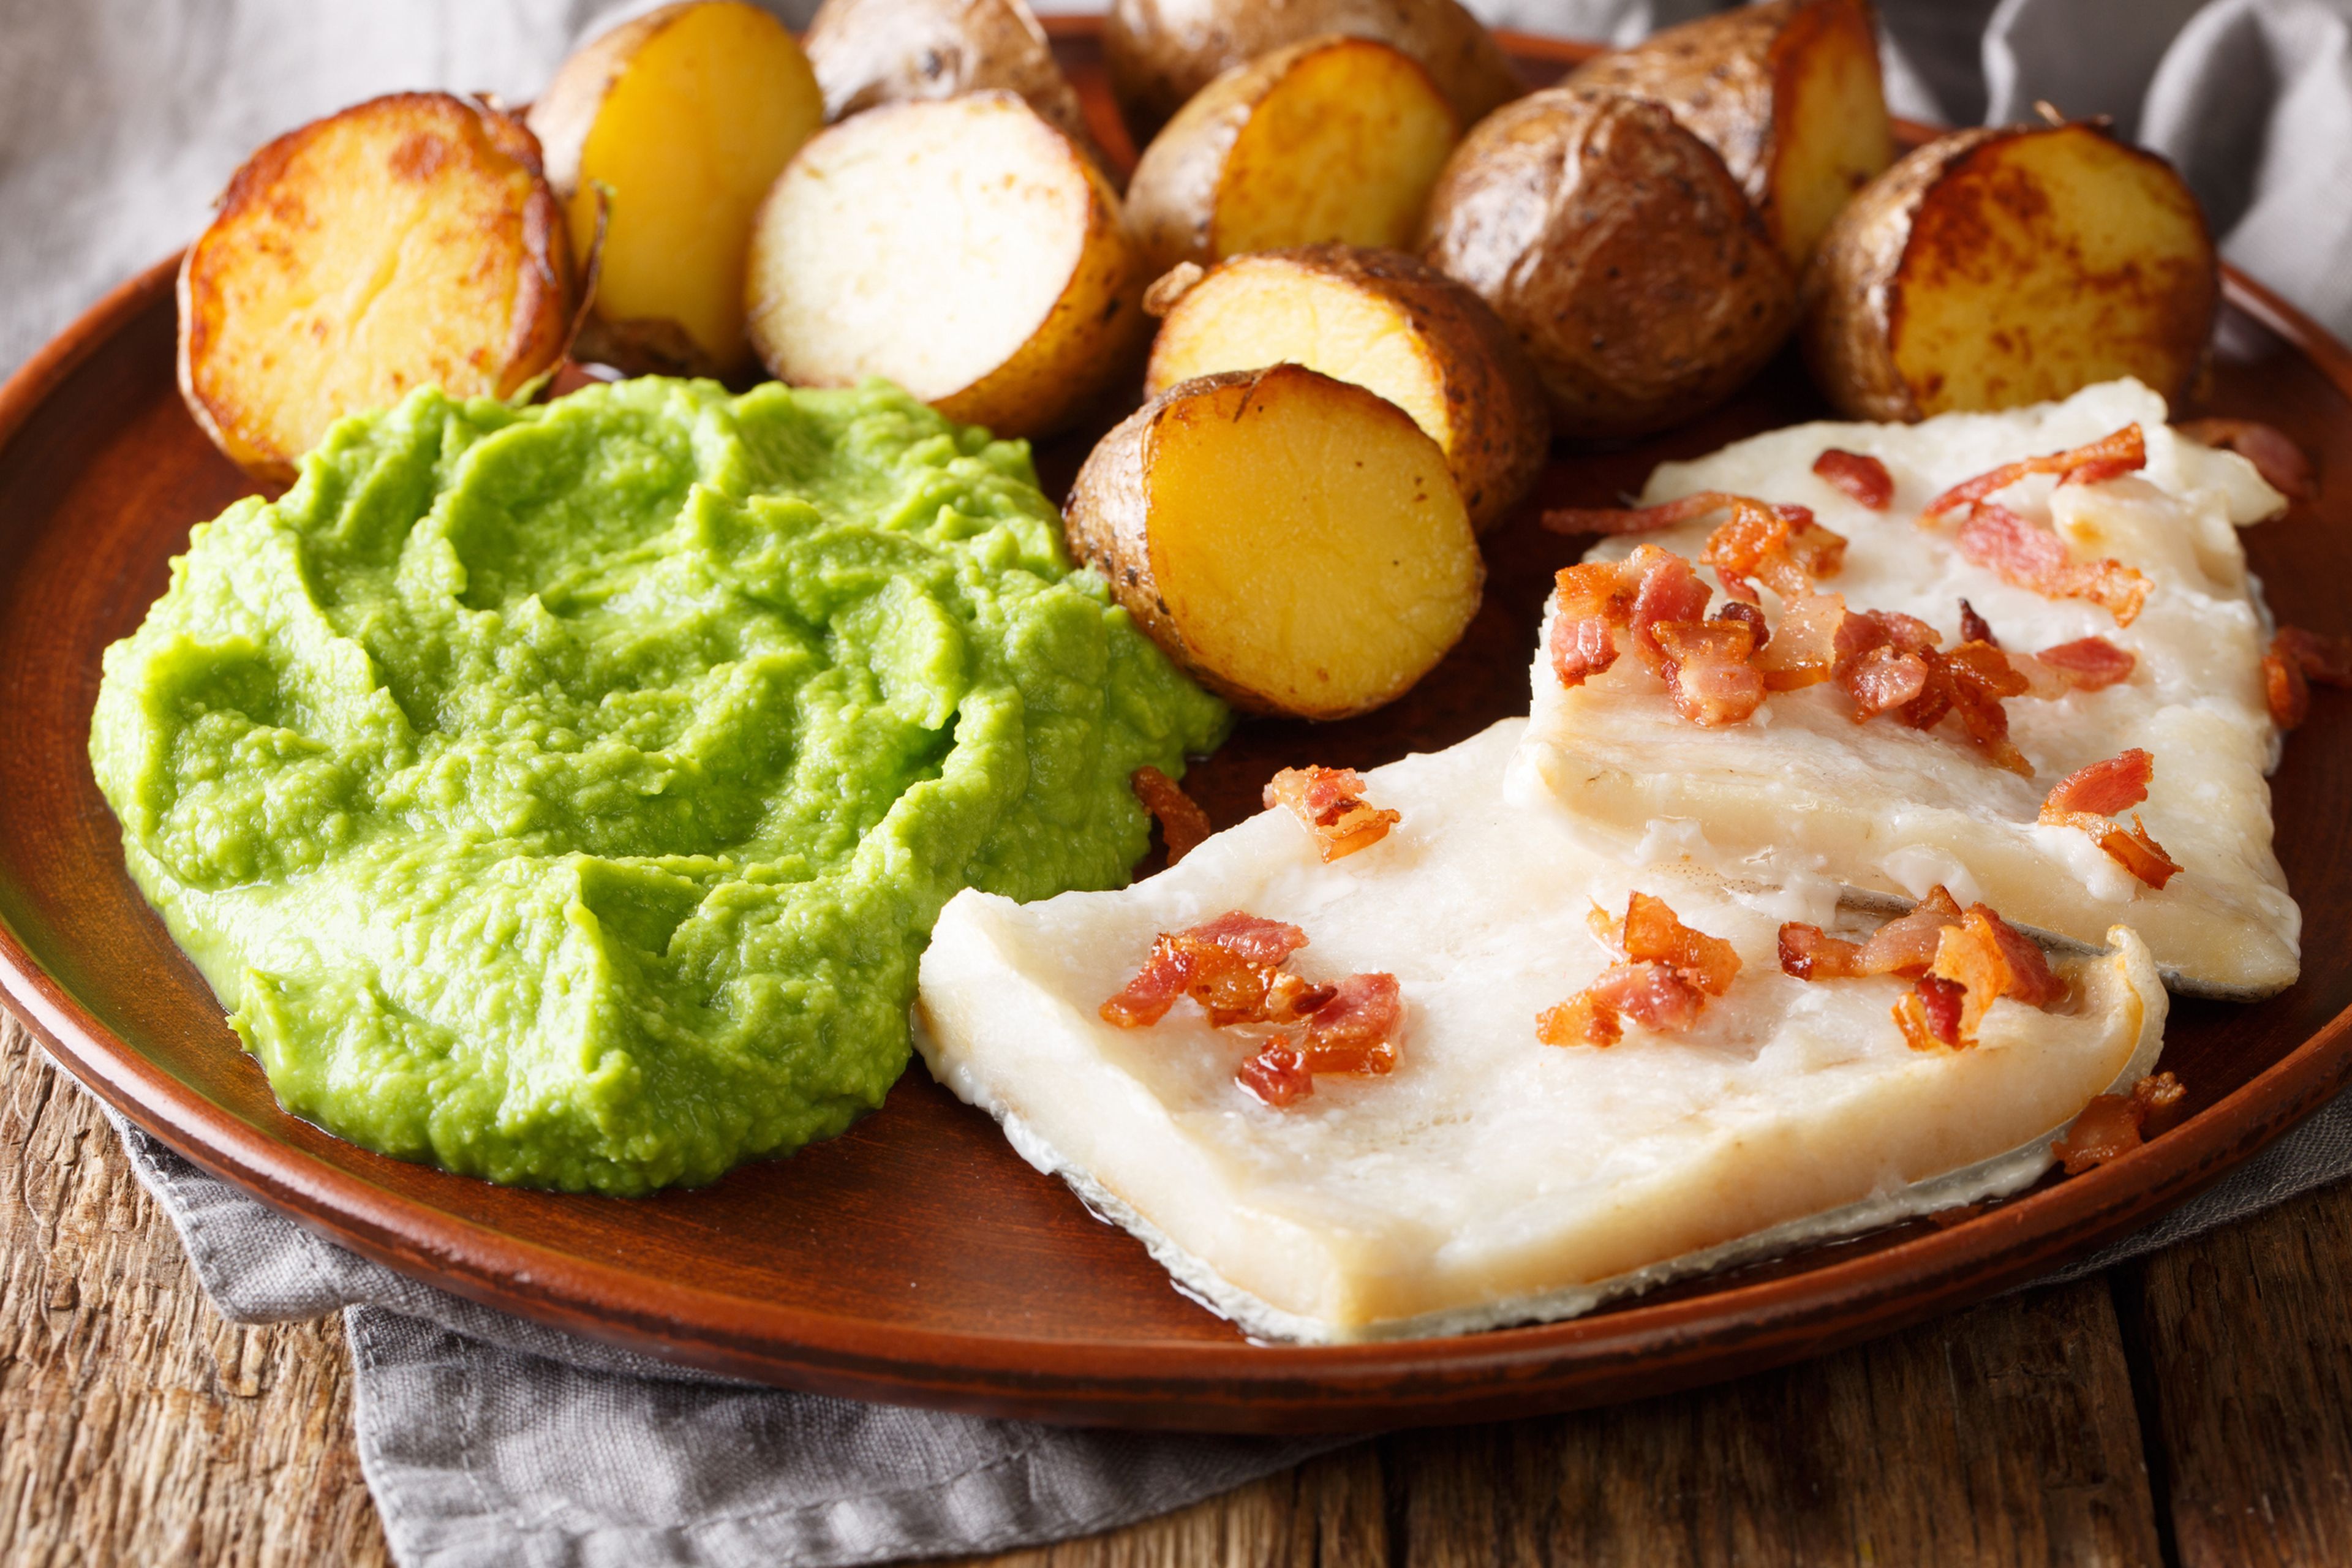 Popular comida escandinava: lutefisk de bacalao con puré de guisantes, patatas al horno y tocino.